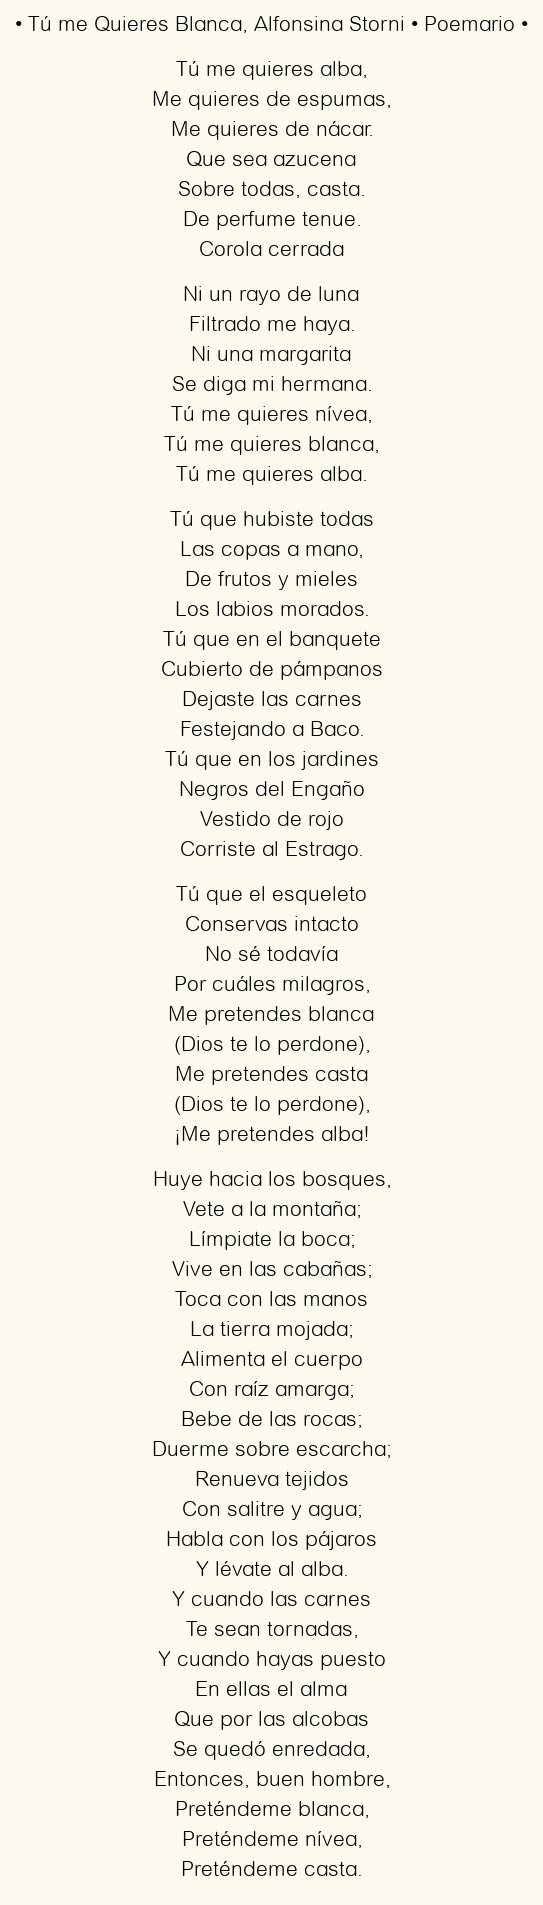 Imagen con el poema Tú me Quieres Blanca, por Alfonsina Storni